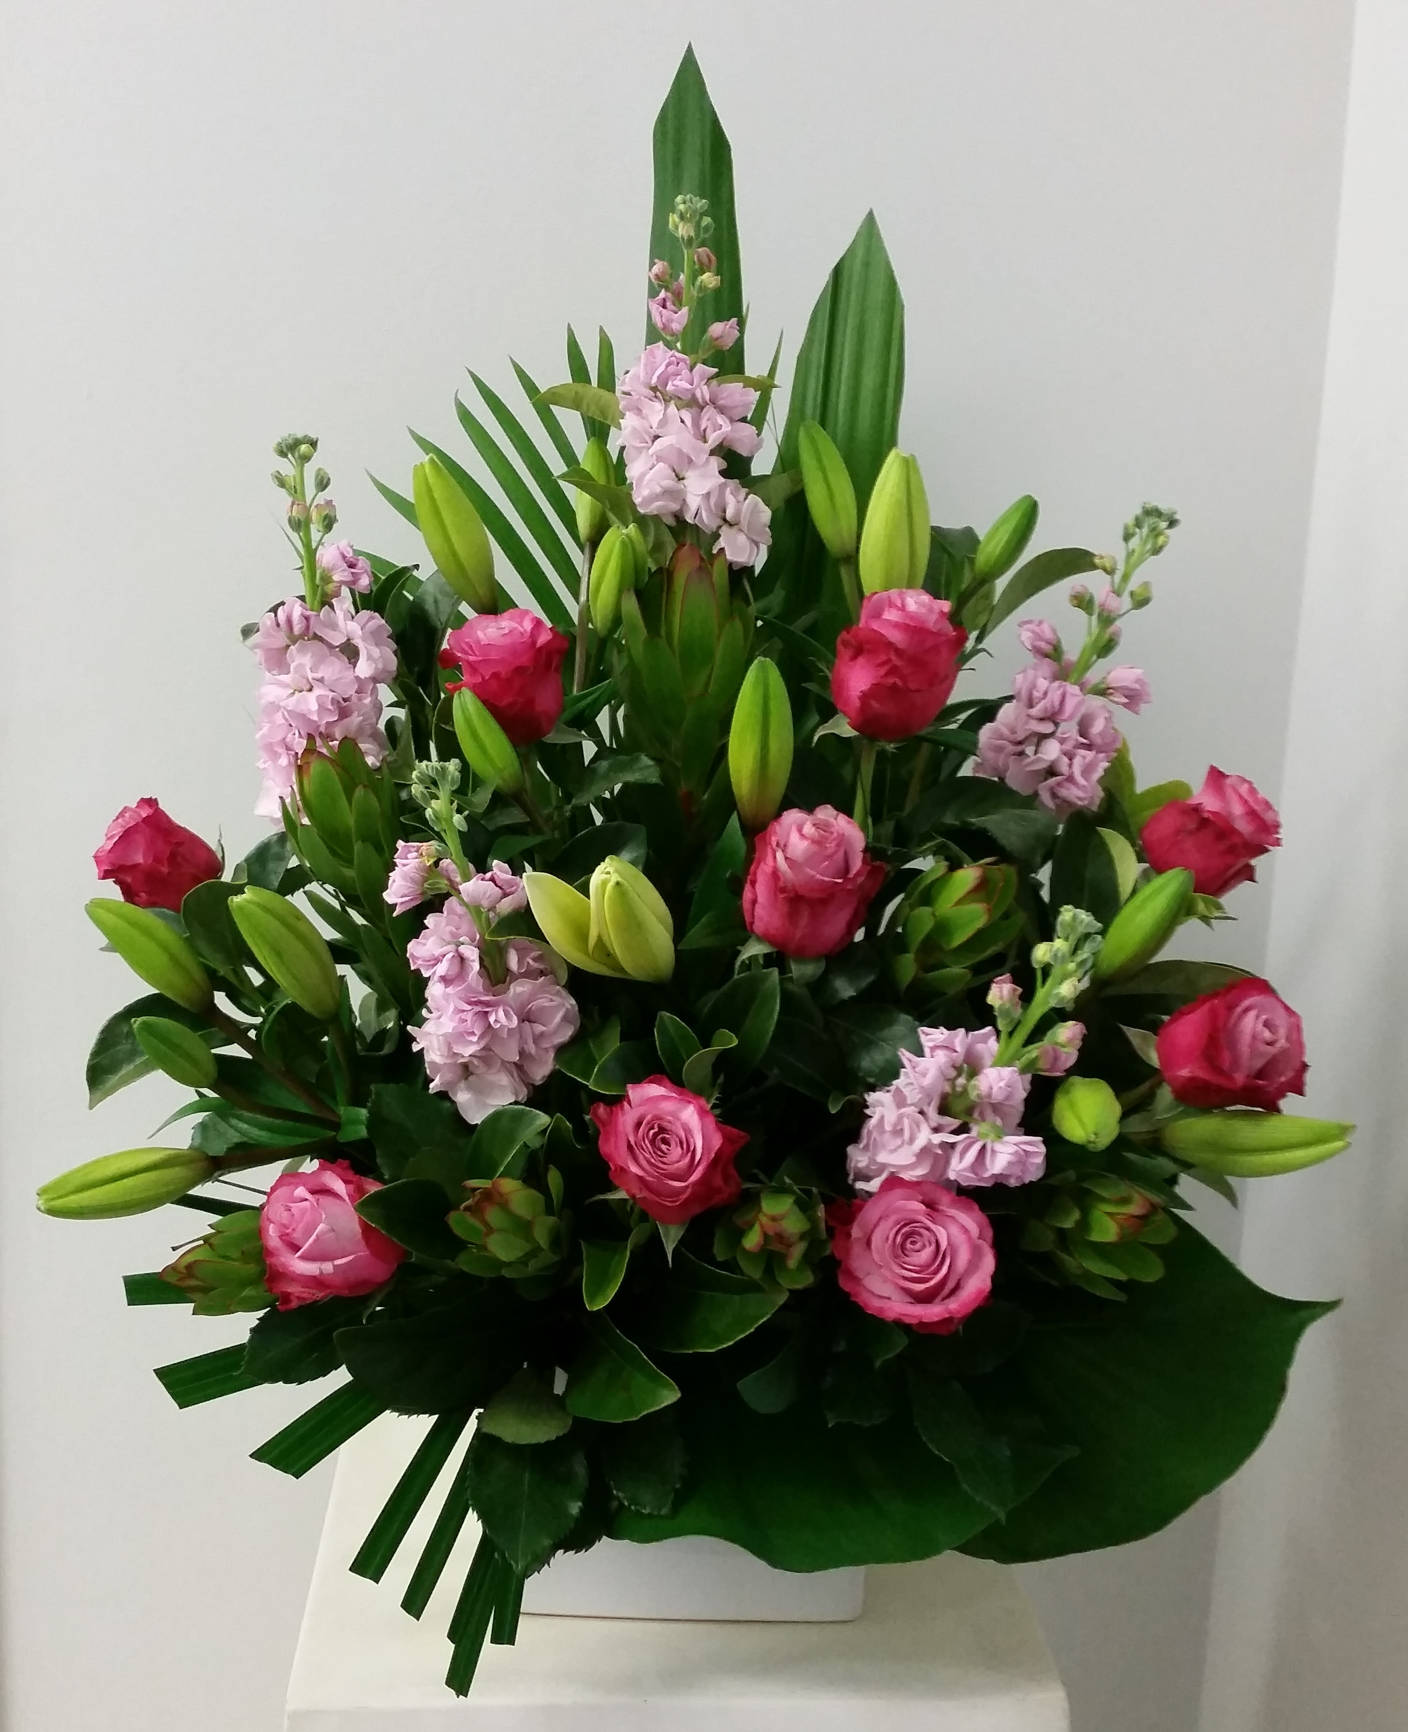 18. Lara - Sweet Blooms Florist